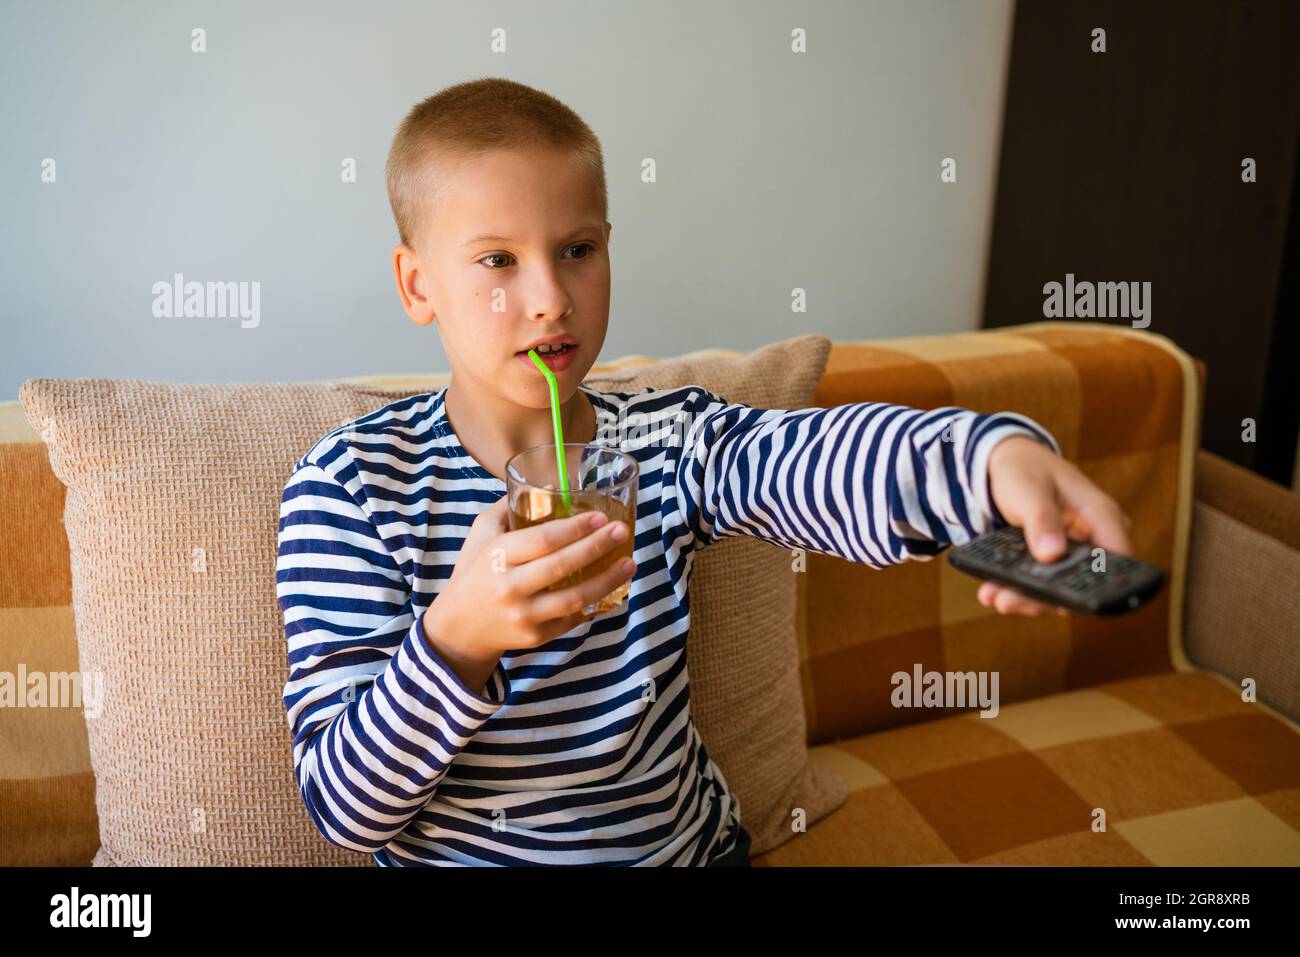 Un garçon d'âge scolaire caucasien est assis sur un canapé dans des vêtements décontractés avec une télécommande dans sa main et change de chaîne sur la télévision. Et boire du jus dans un verre à travers une paille. Concept de loisirs maison de vacances Banque D'Images